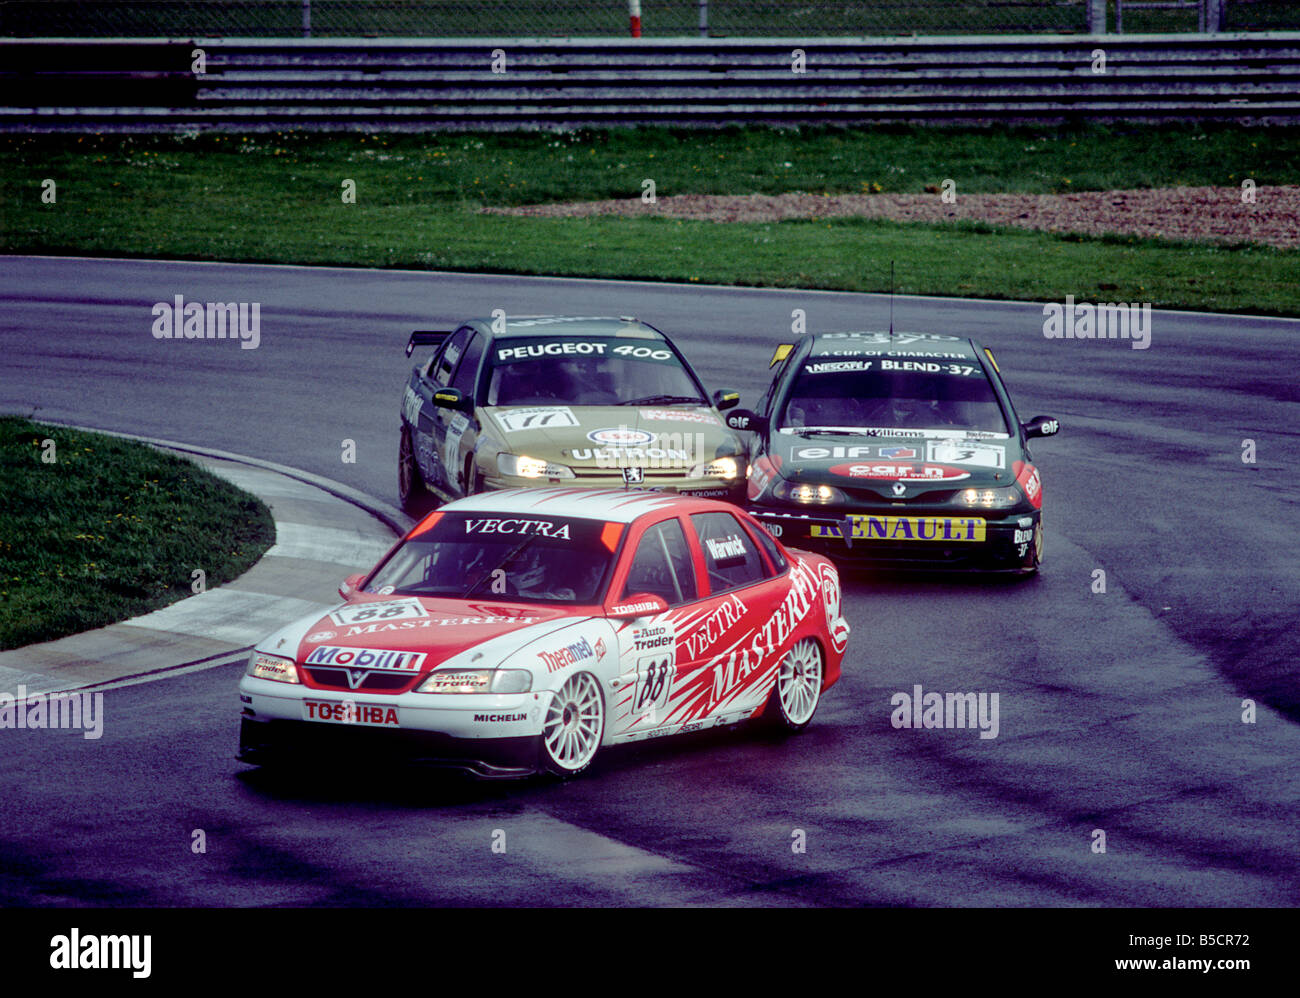 Derek Warwick Paul Radisich und Jason Plato British Touring Car Rennen Silverstone 26. April 1998 Stockfoto